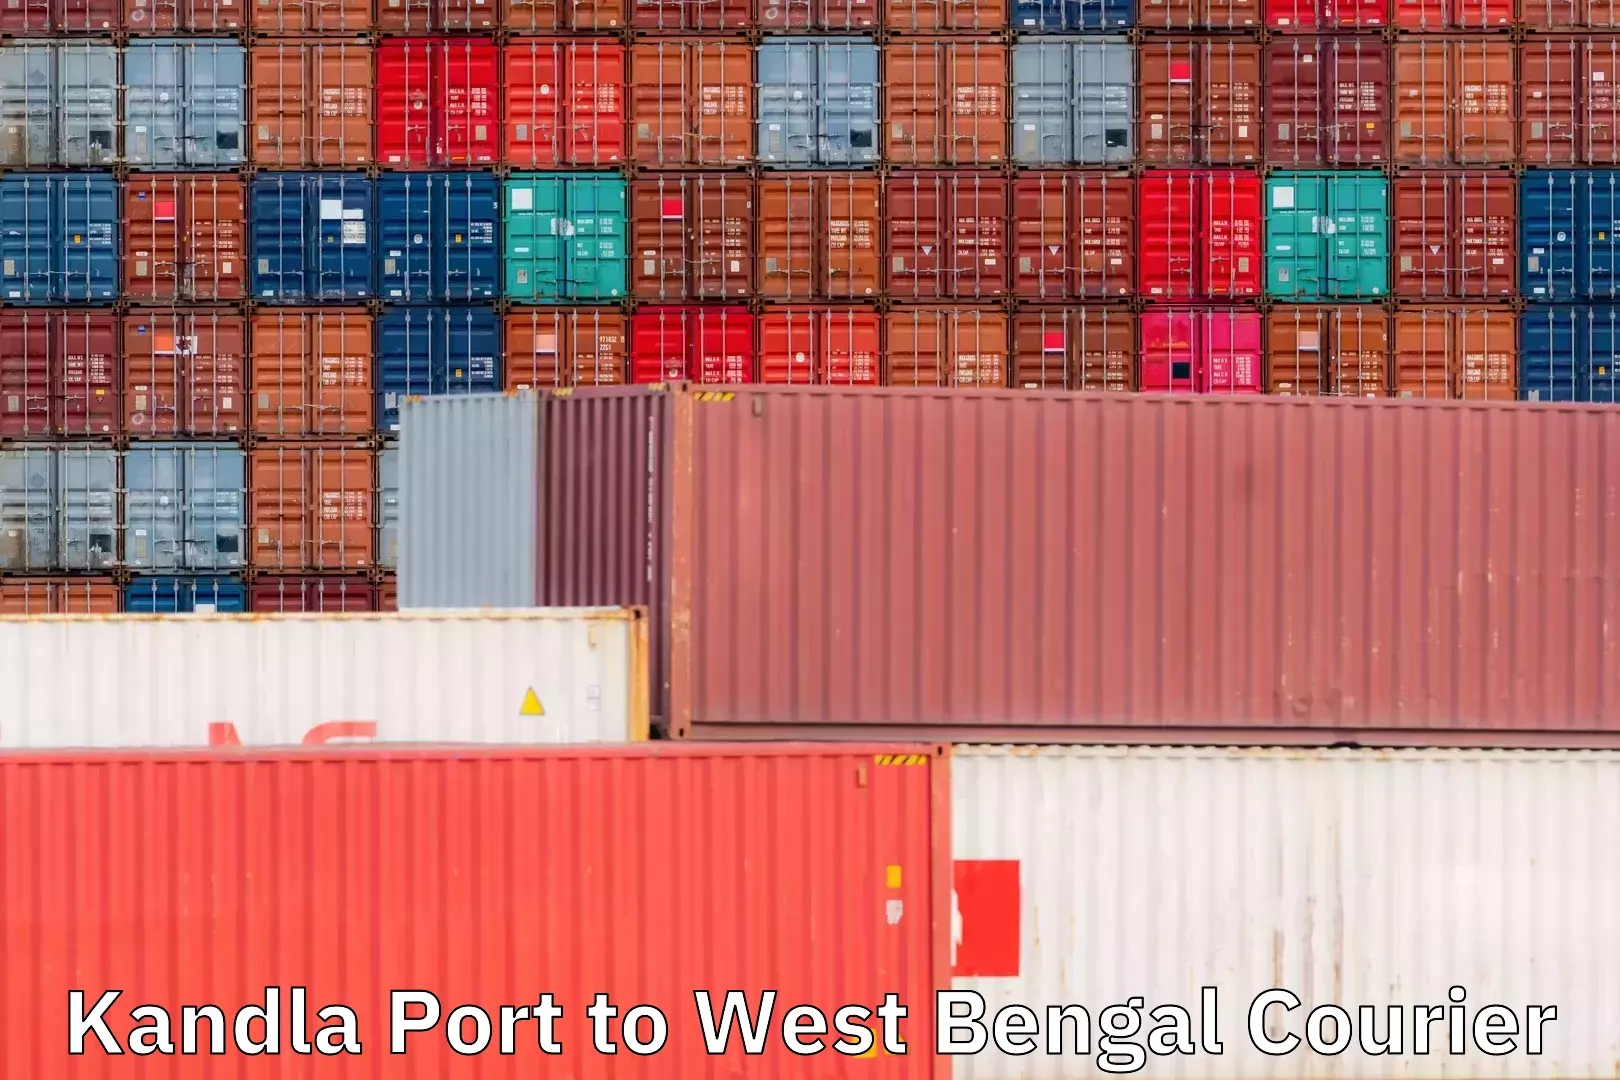 Global logistics network Kandla Port to Jhalda